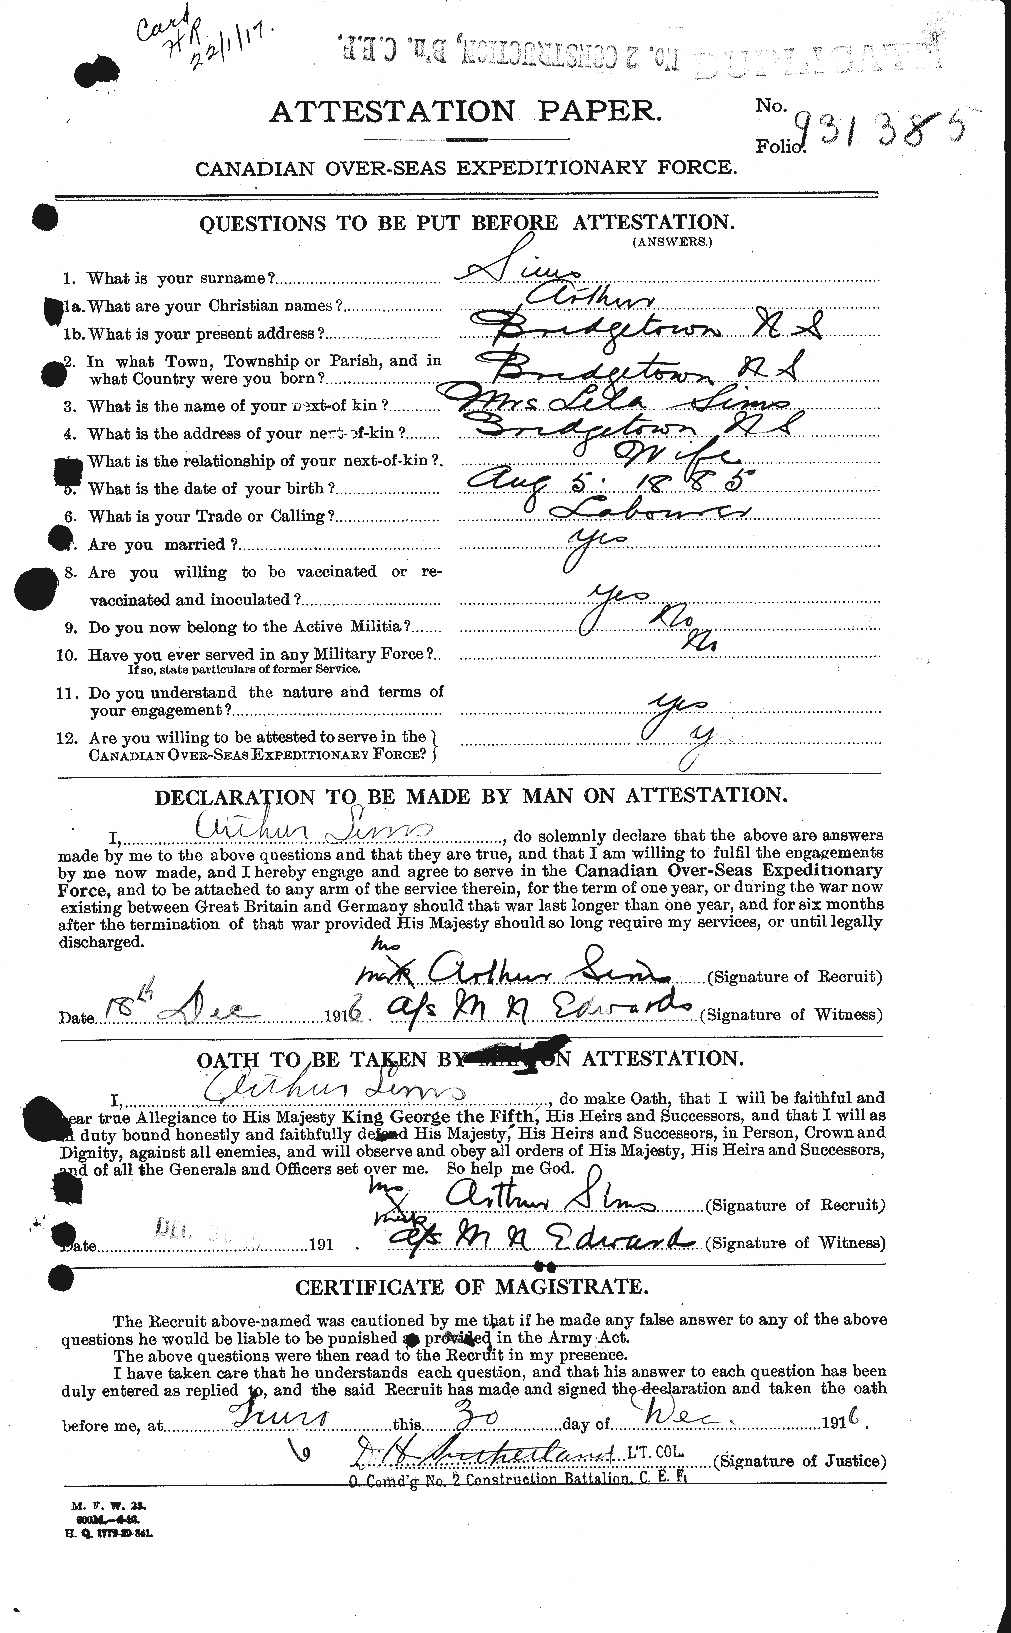 Dossiers du Personnel de la Première Guerre mondiale - CEC 097801a